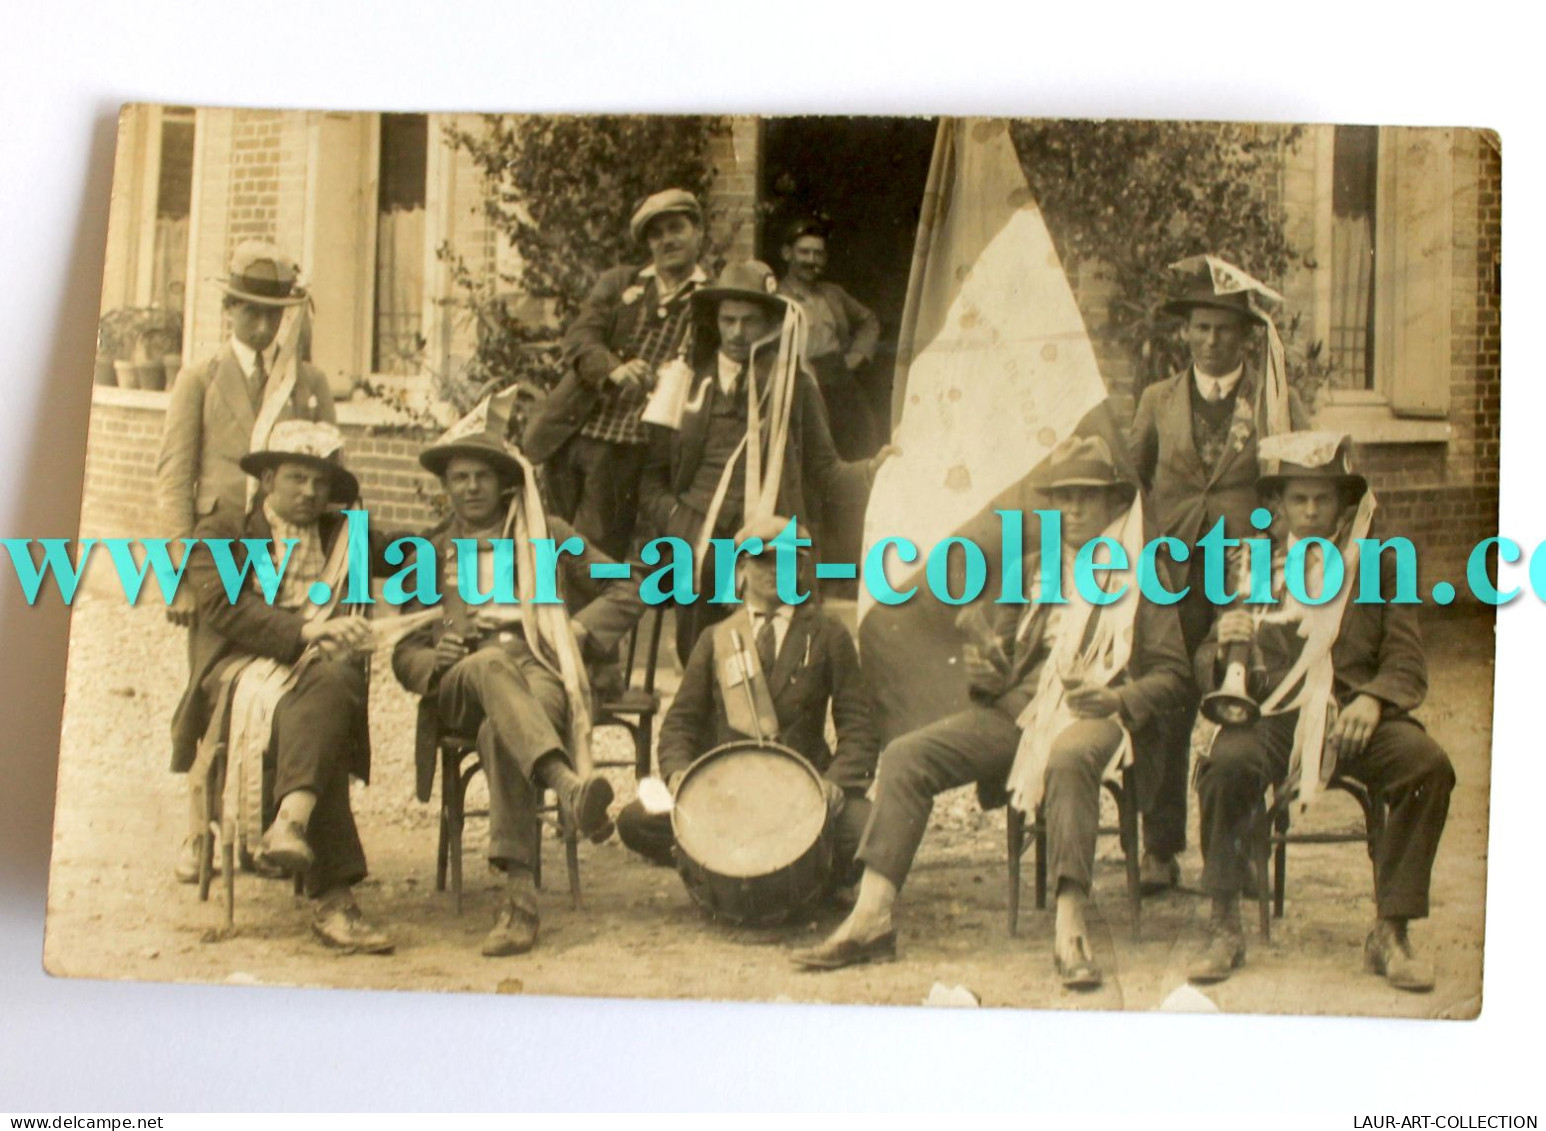 RARE CPA PHOTO 1900-20 GROUPE MUSICIEN HOMME ANIMÉ MUSIQUE FANFARE FOLKLORE CARTE POSTALE ANCIENNE POSTCARD (1303.8 - Musique Et Musiciens